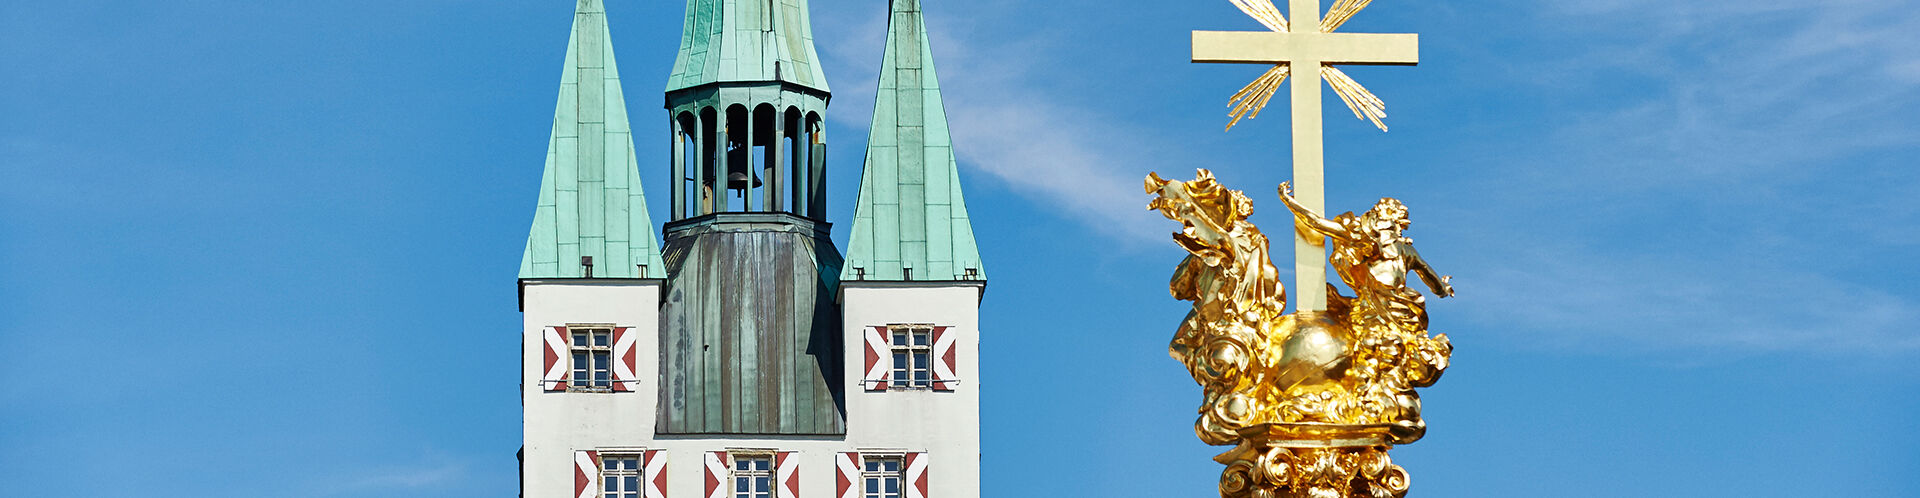 Straubinger Stadtturm mit Dreifaltigkeitssäule im Vordergrund